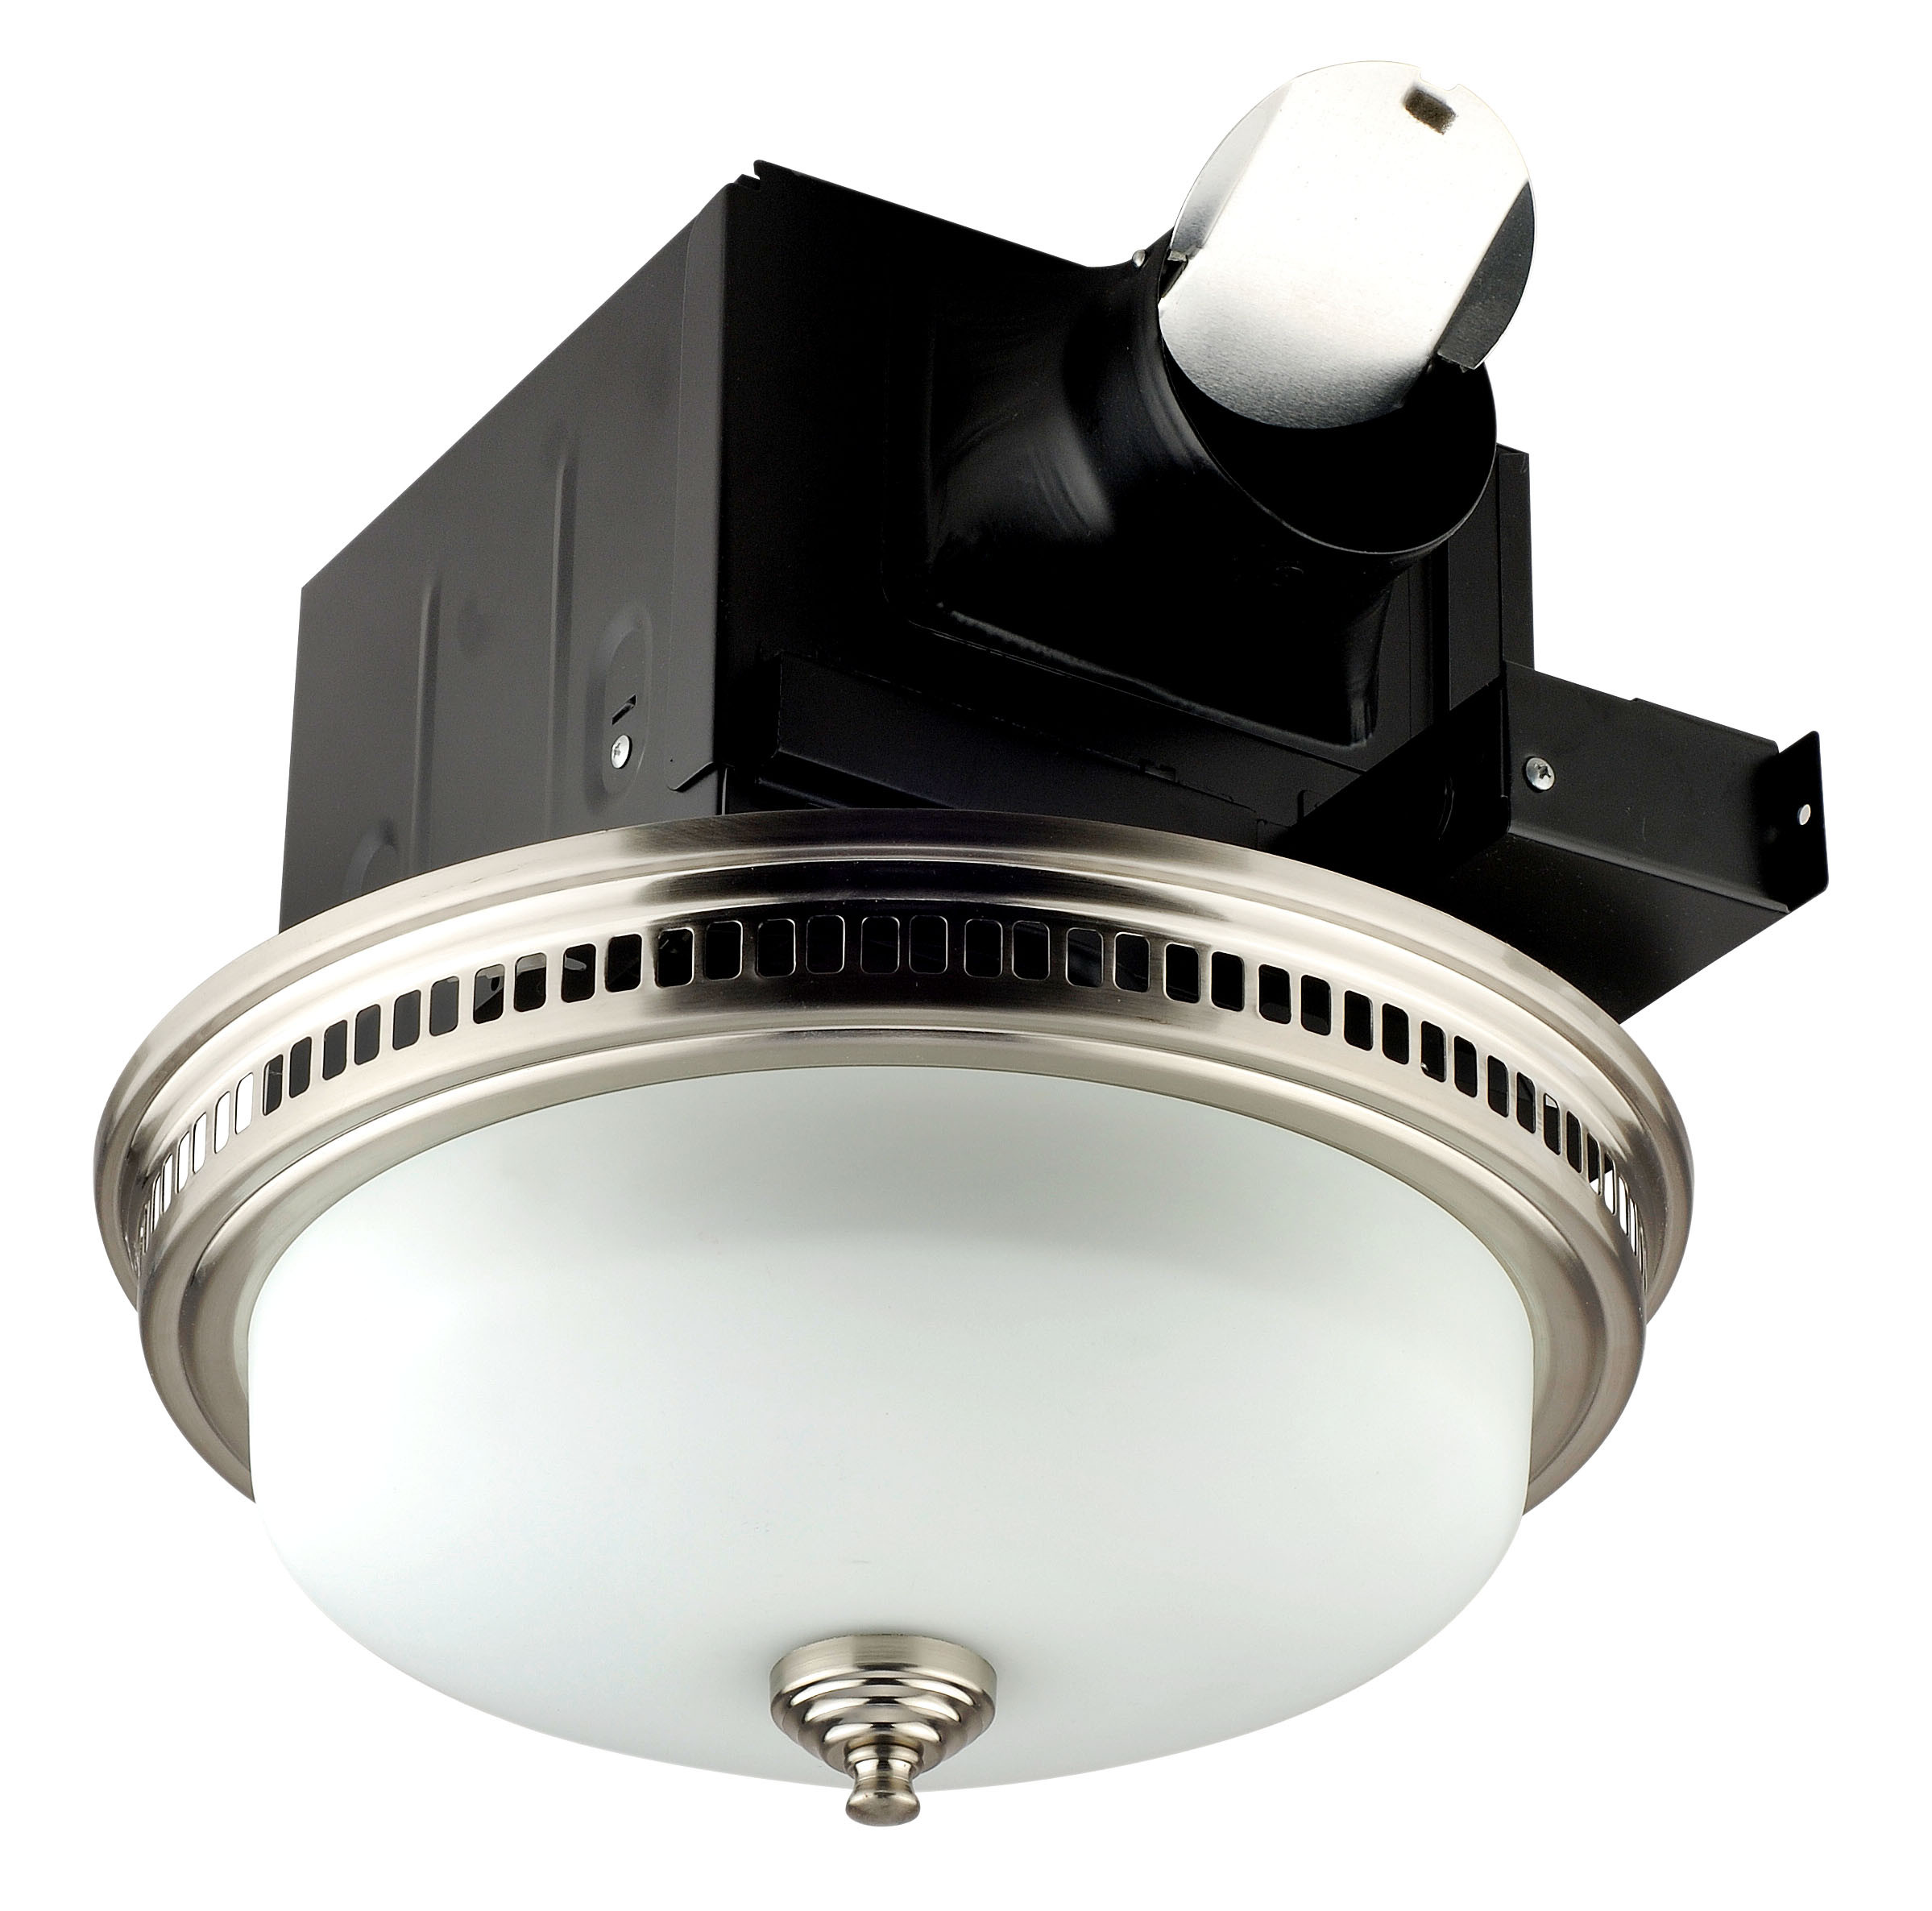 Utilitech Bathroom Fan With Light
 Bathroom Utilitech Bathroom Fan For Best Air Control Idea